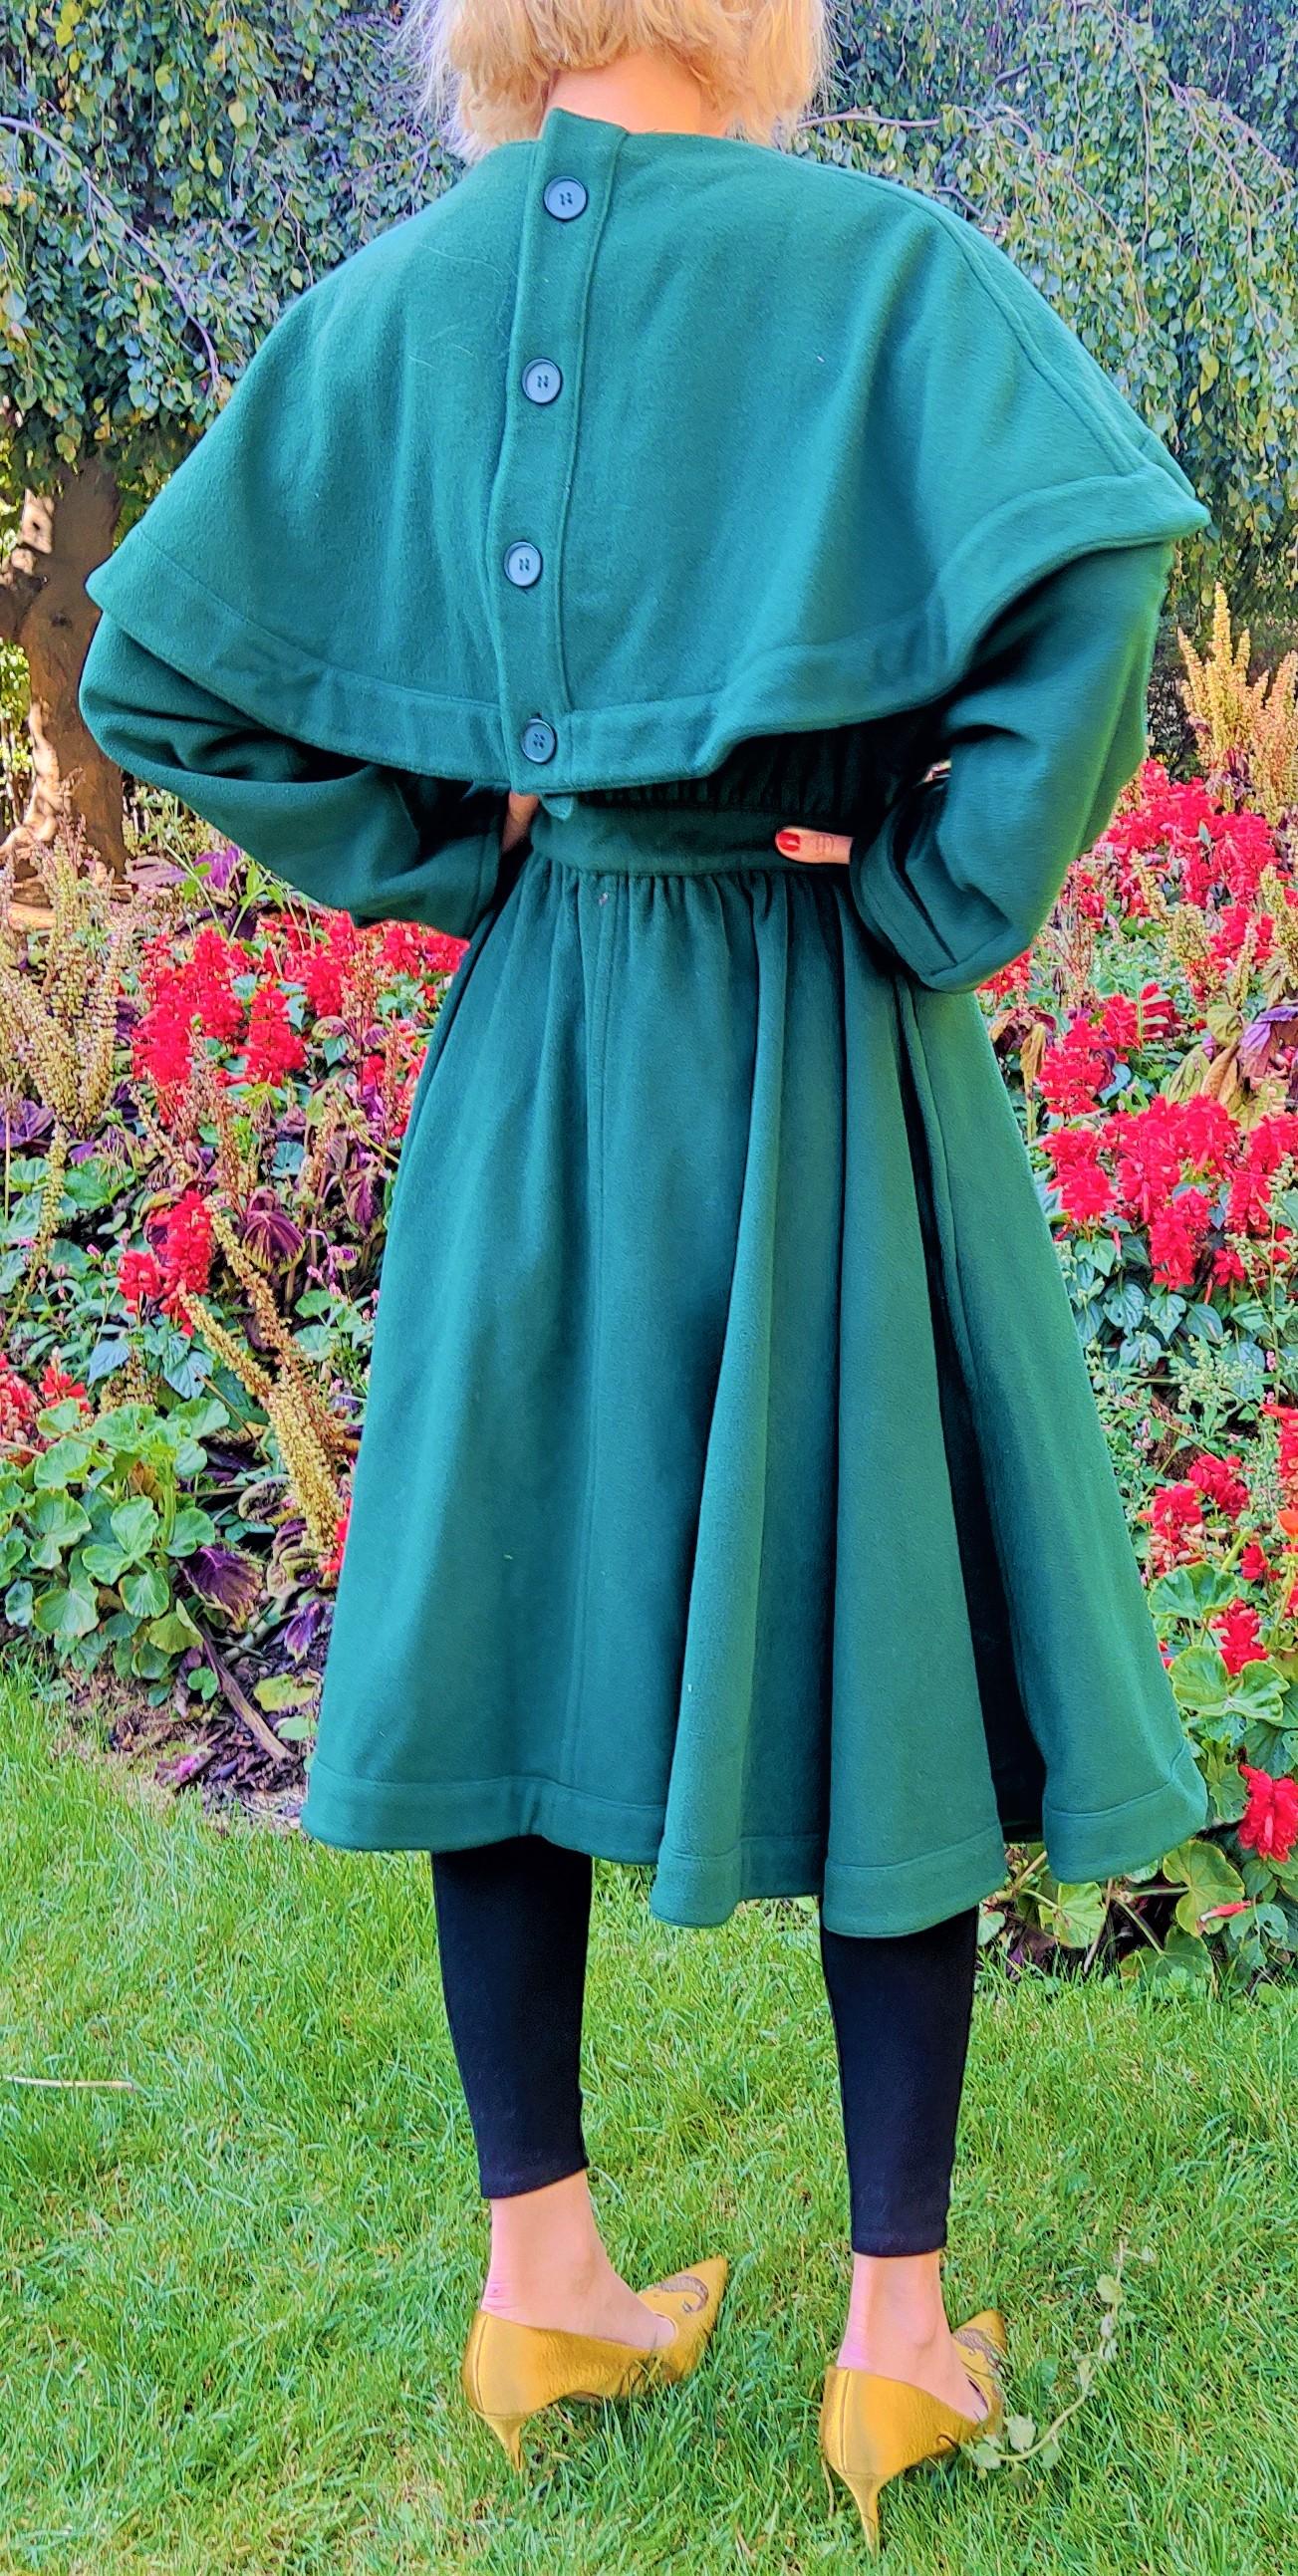 Women's Balenciaga Evening Ball Gown Wool Cashmere Wasp Waist 80s Green Jacket Coat